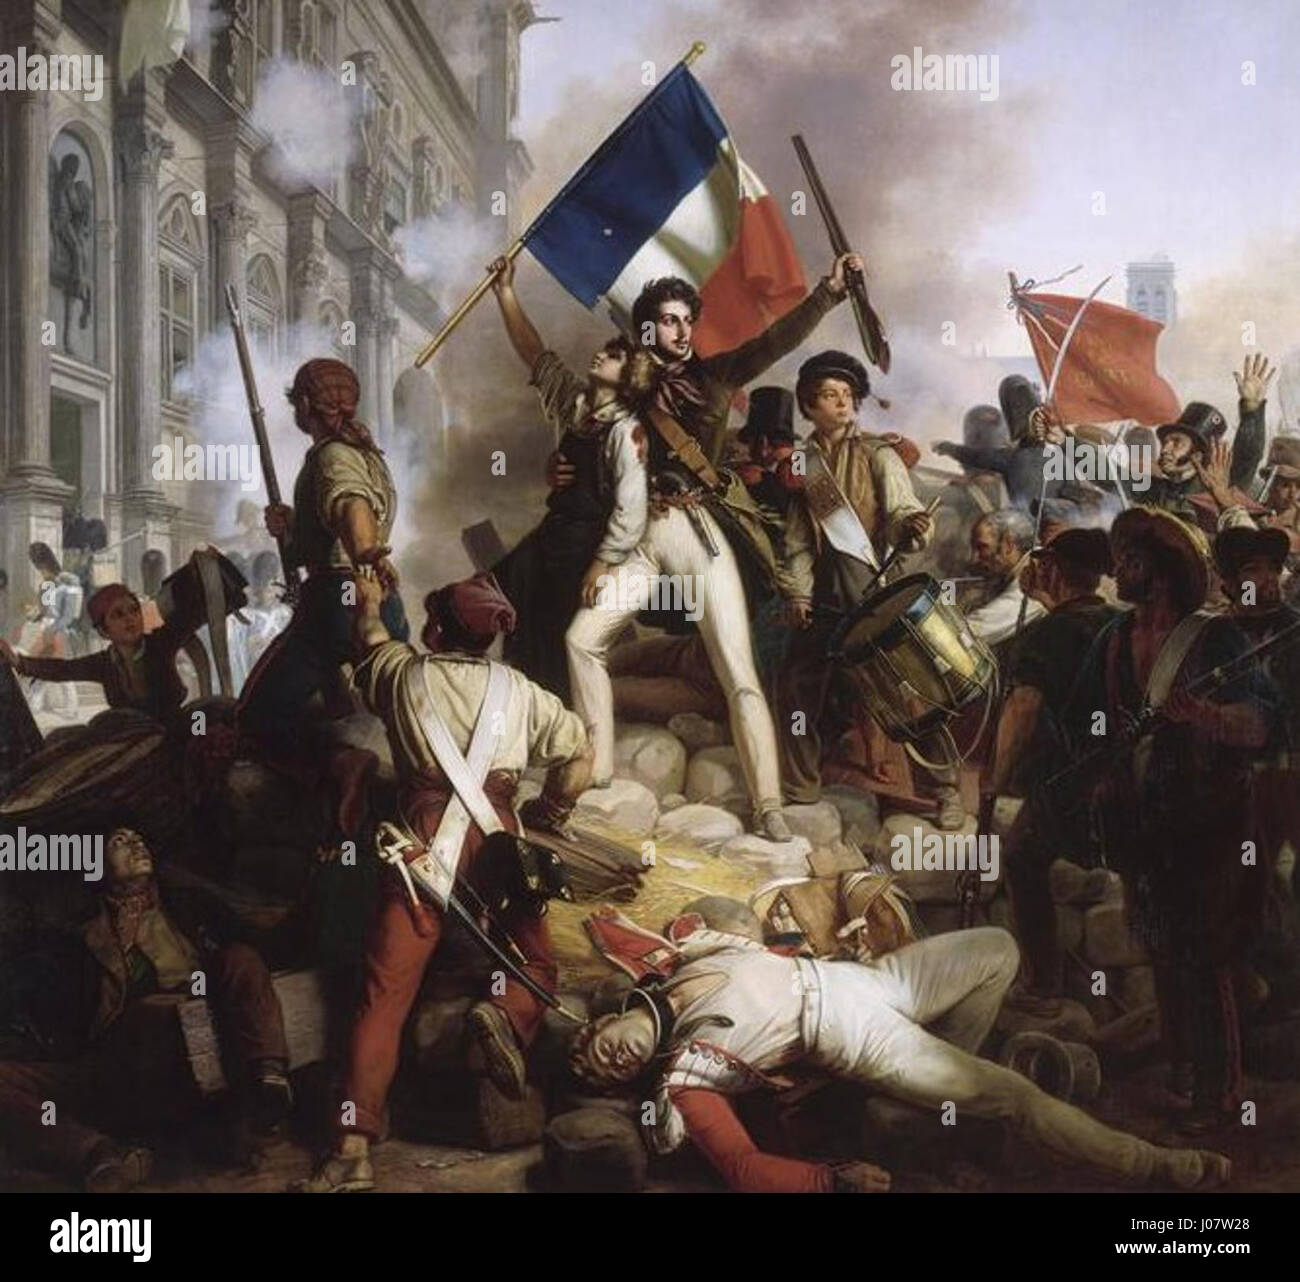 Révolution de 1830 - Combat devant l'hôtel de ville - 28.07.1830 Stock Photo